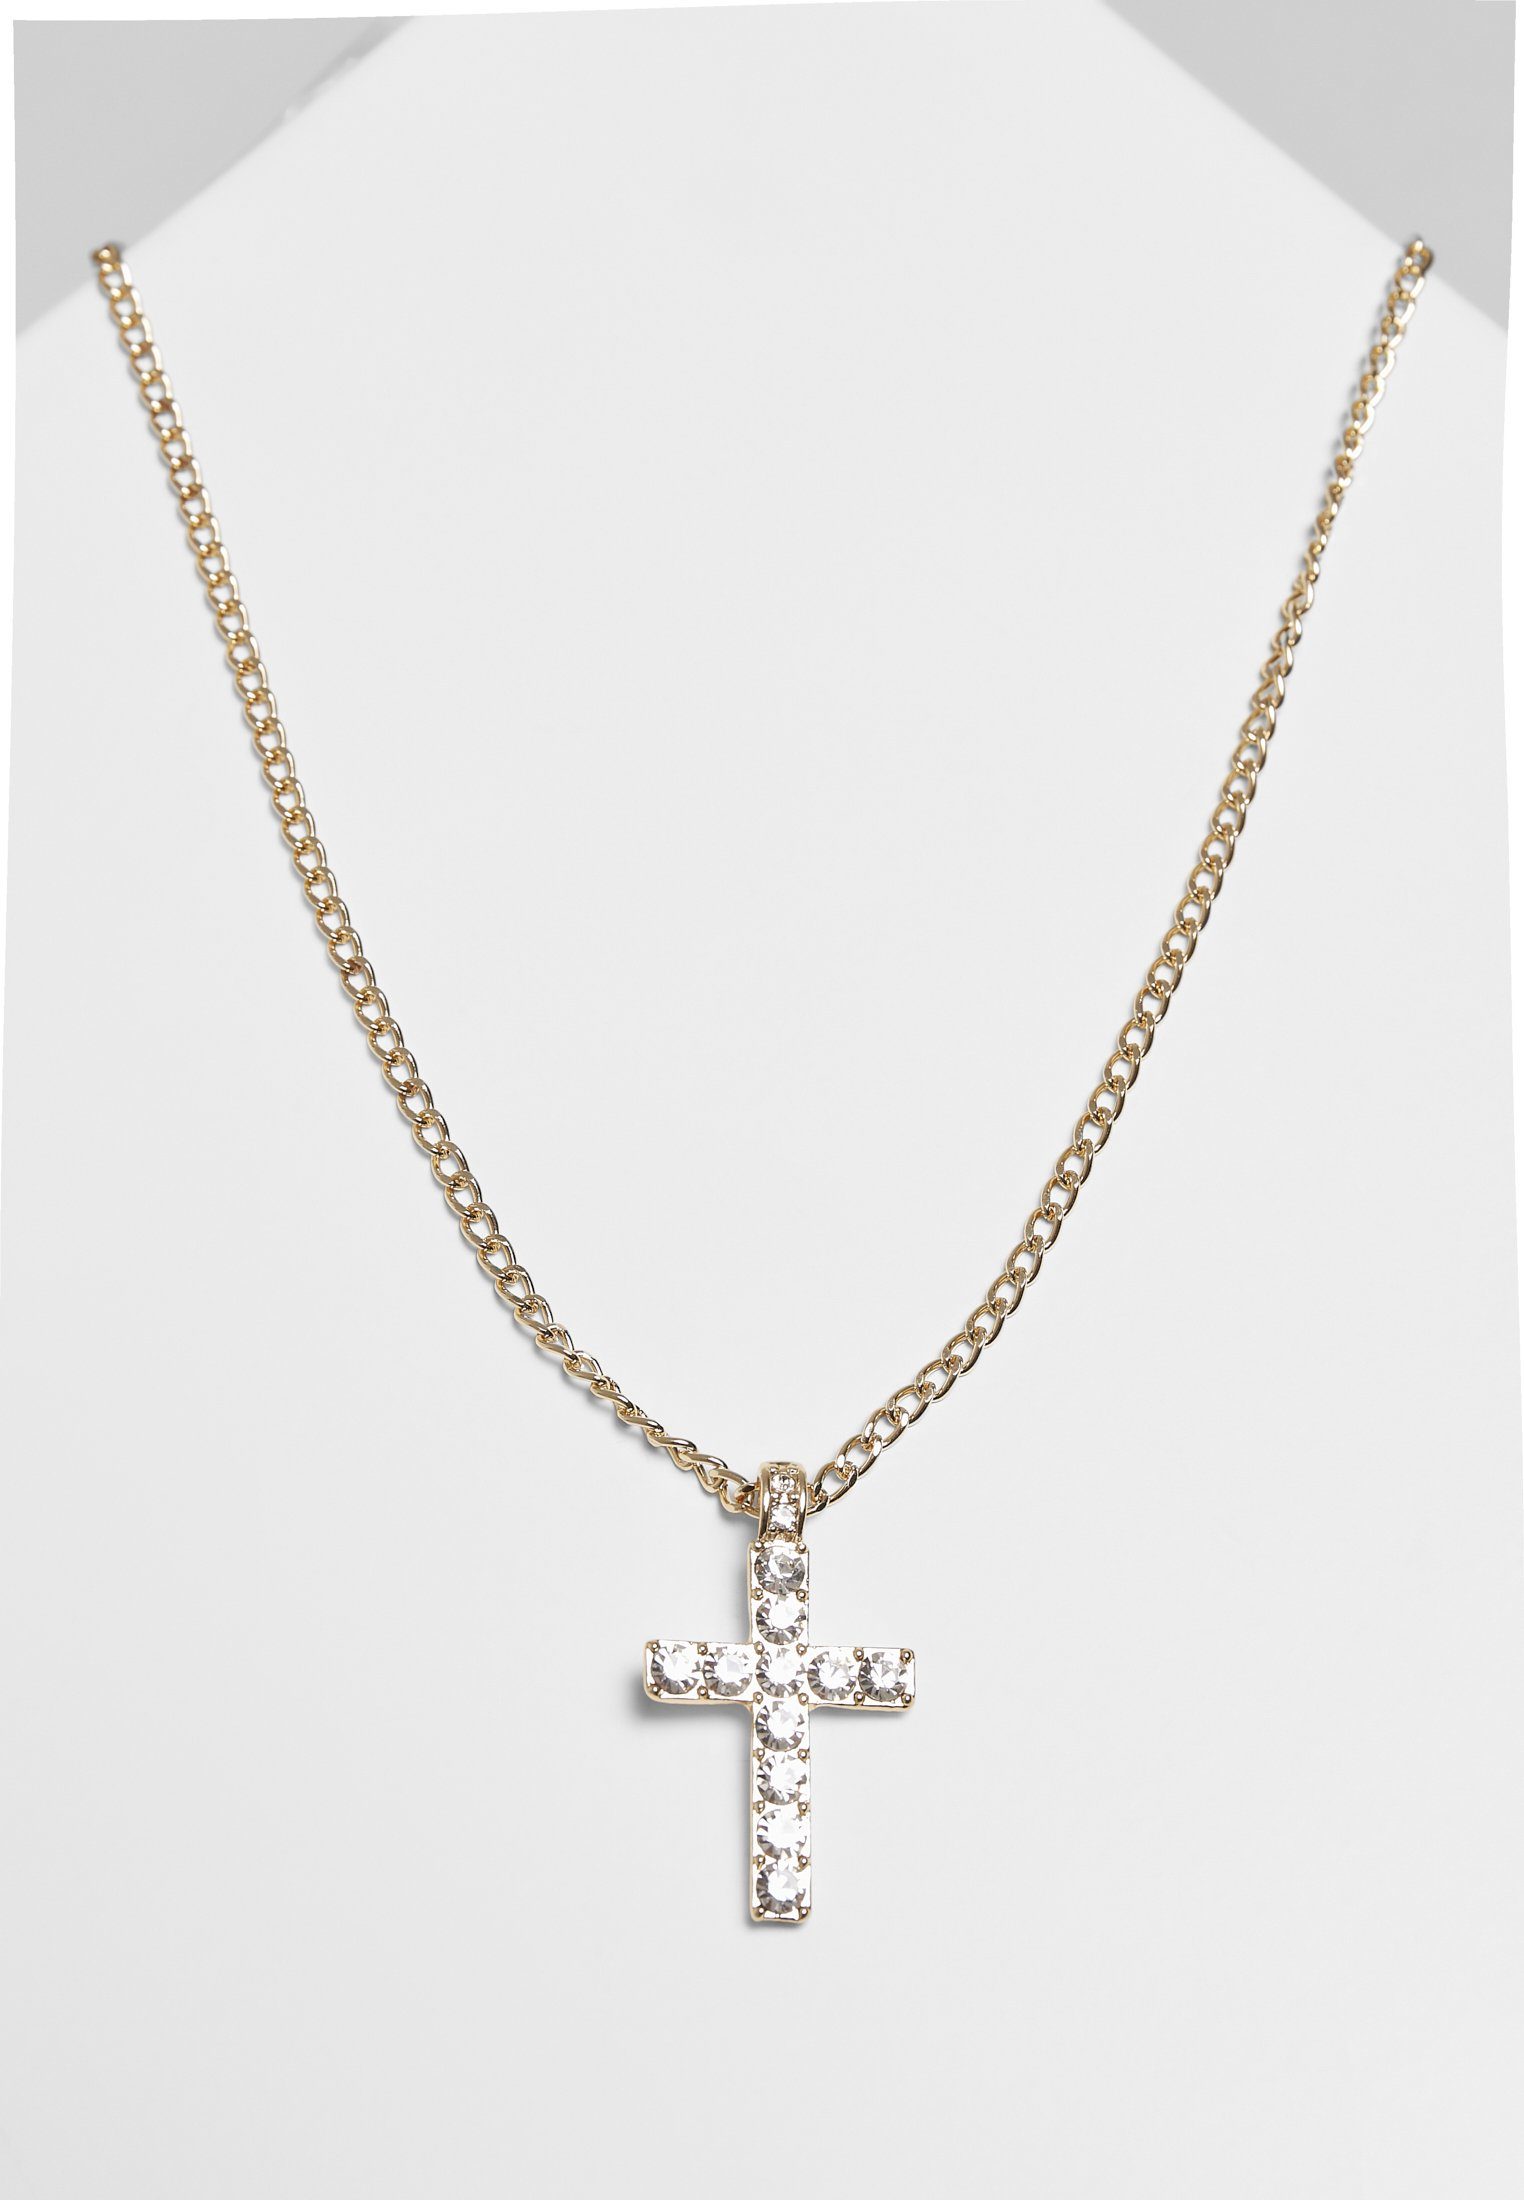 Komfort von Edelstahlkette perfektes Necklace, ein Diamond Für Stil Cross CLASSICS Gefühl und URBAN Accessoires